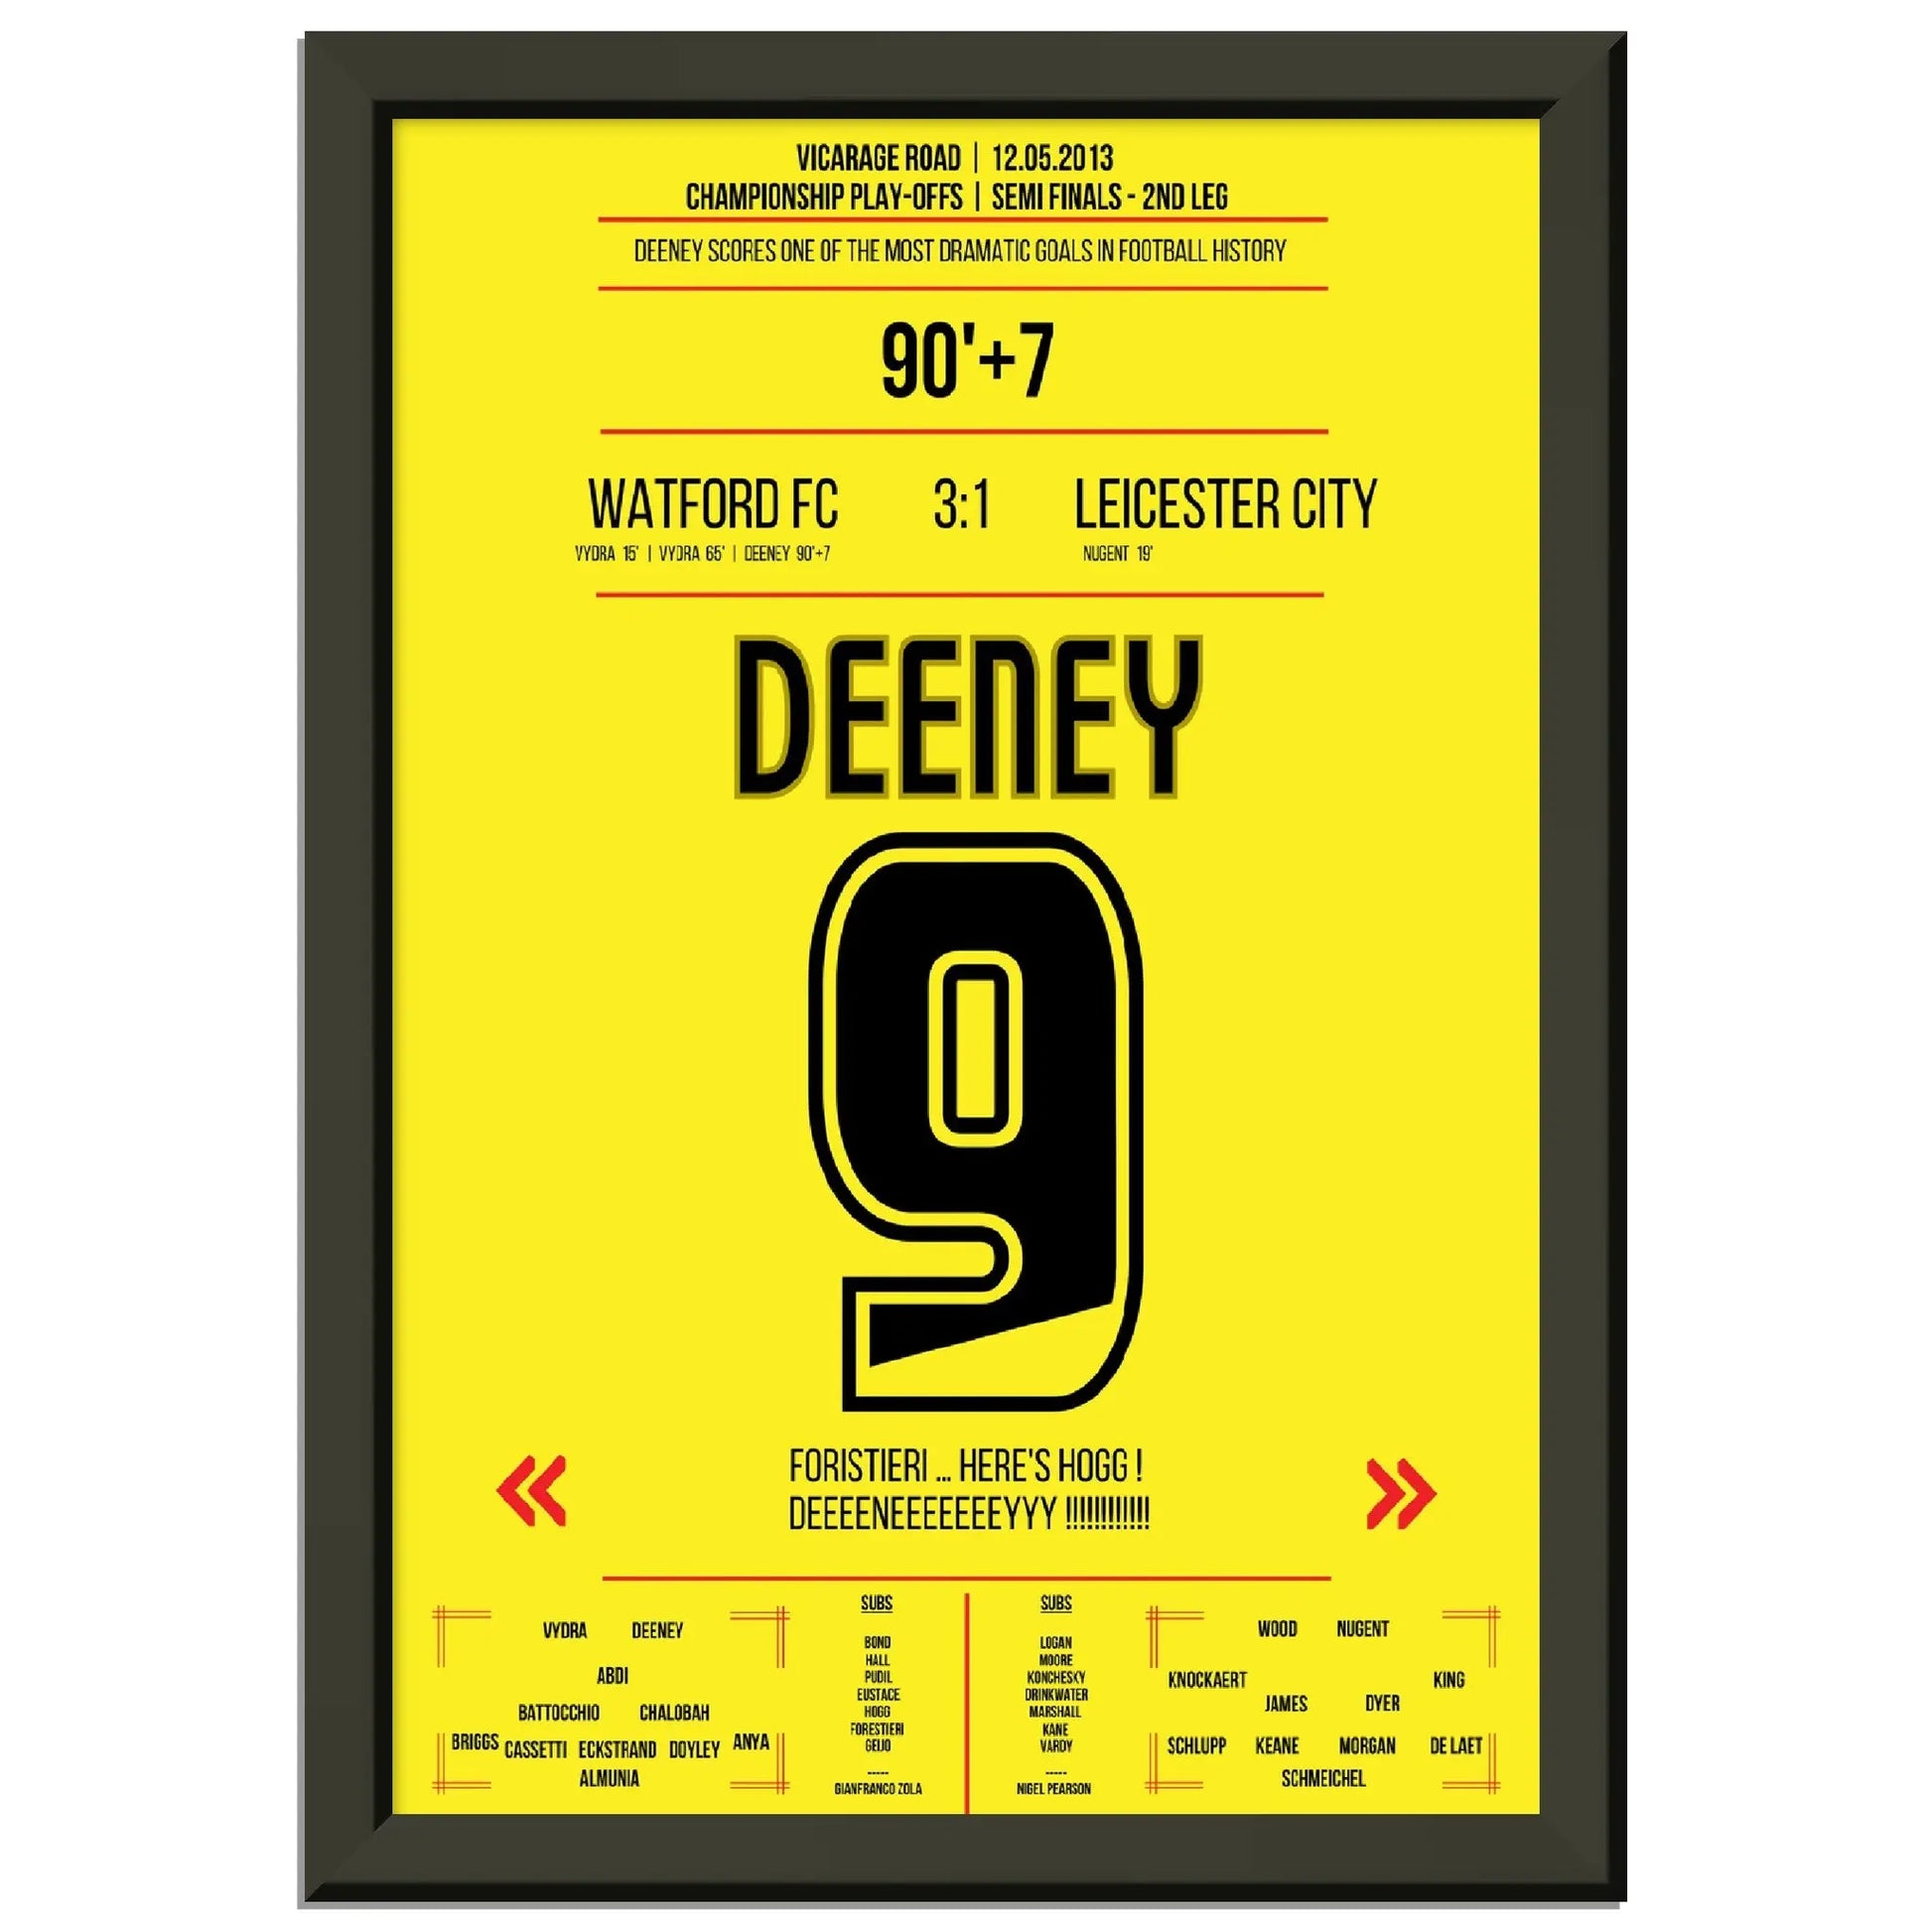 Deeneys mit dem dramatischsten Siegtreffer Watford - Leicester Playoffs 2013 